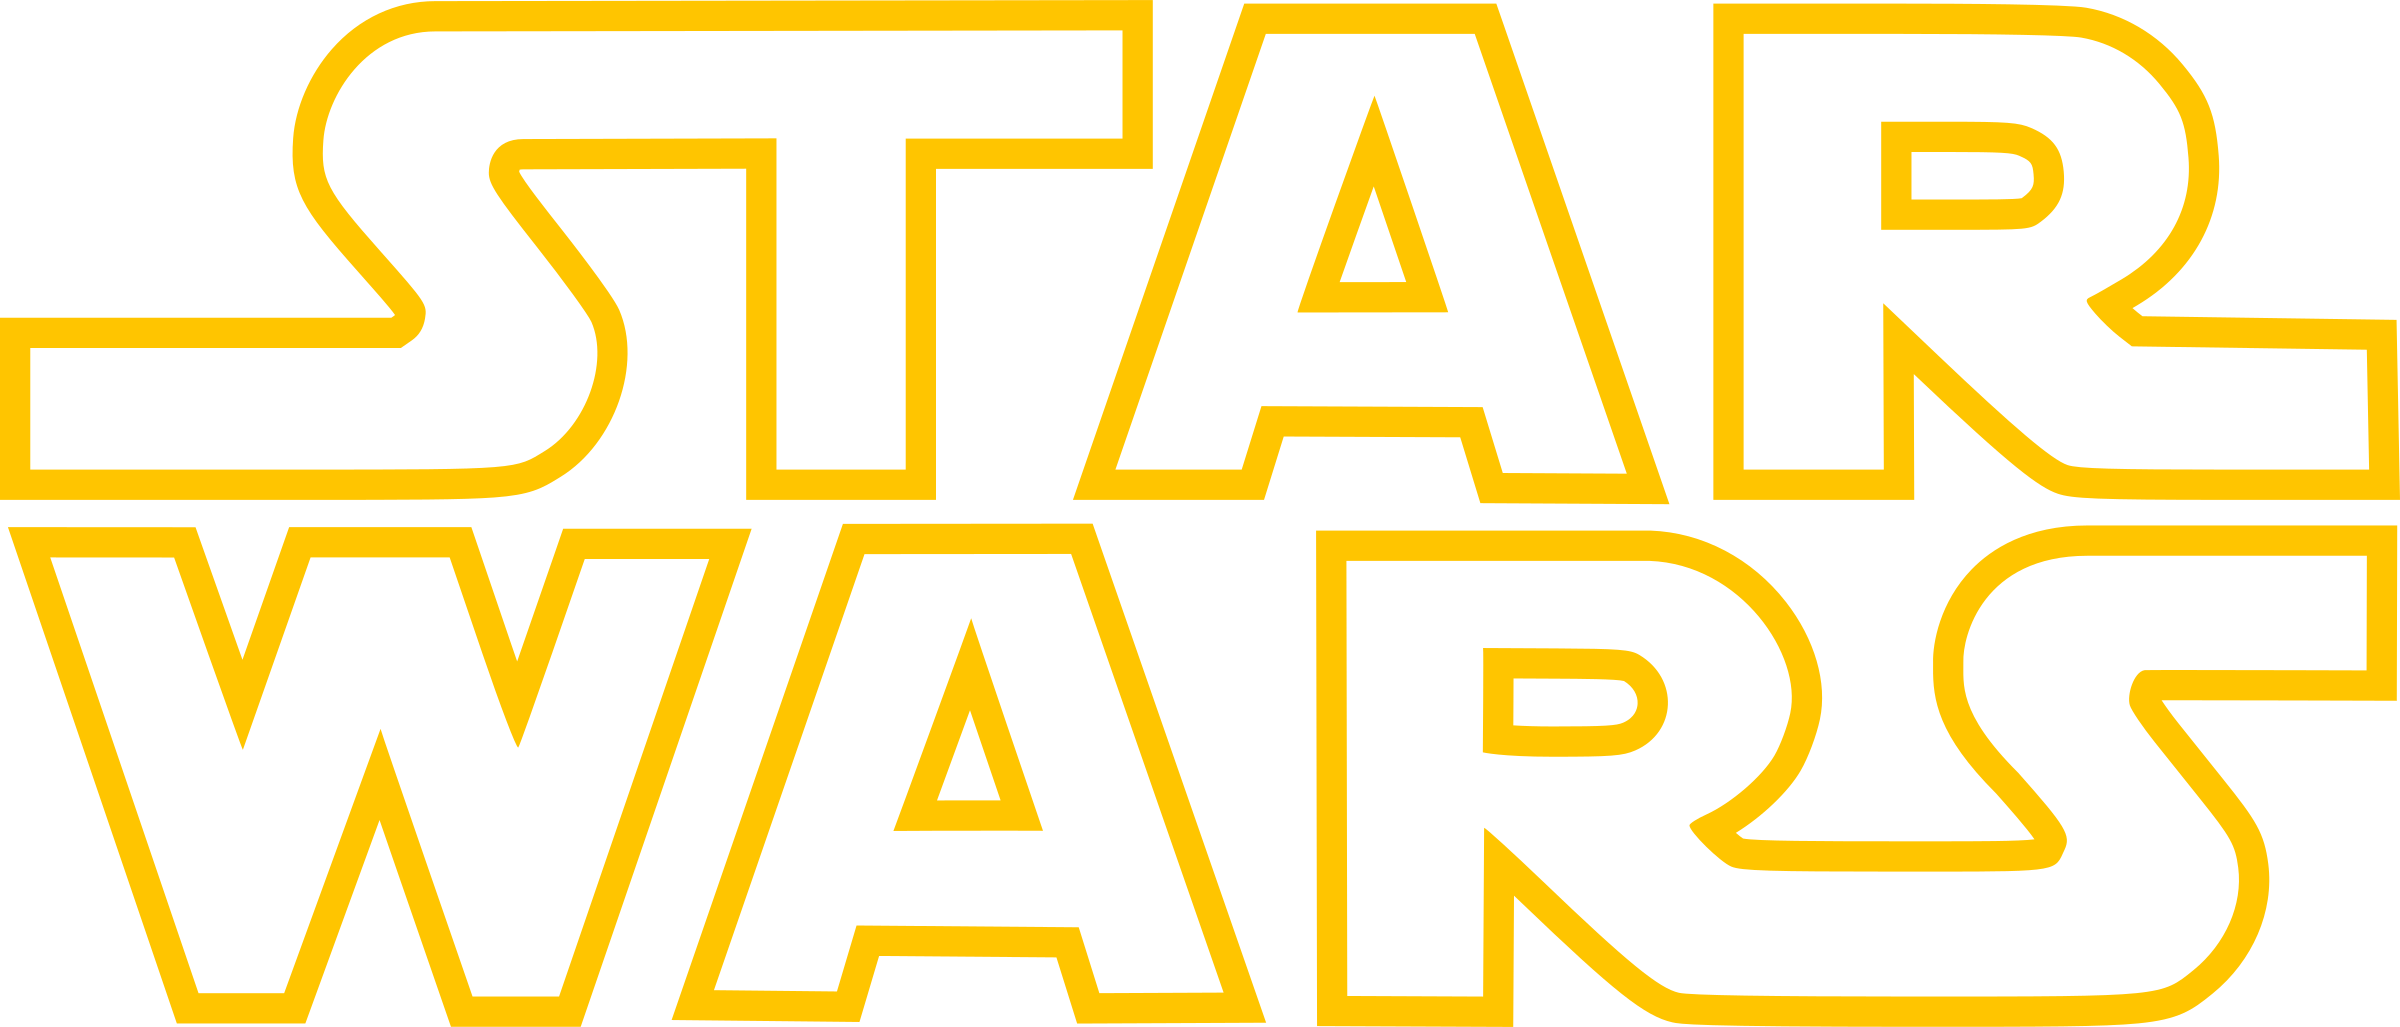 Star Wars logo PNG image de haute qualité